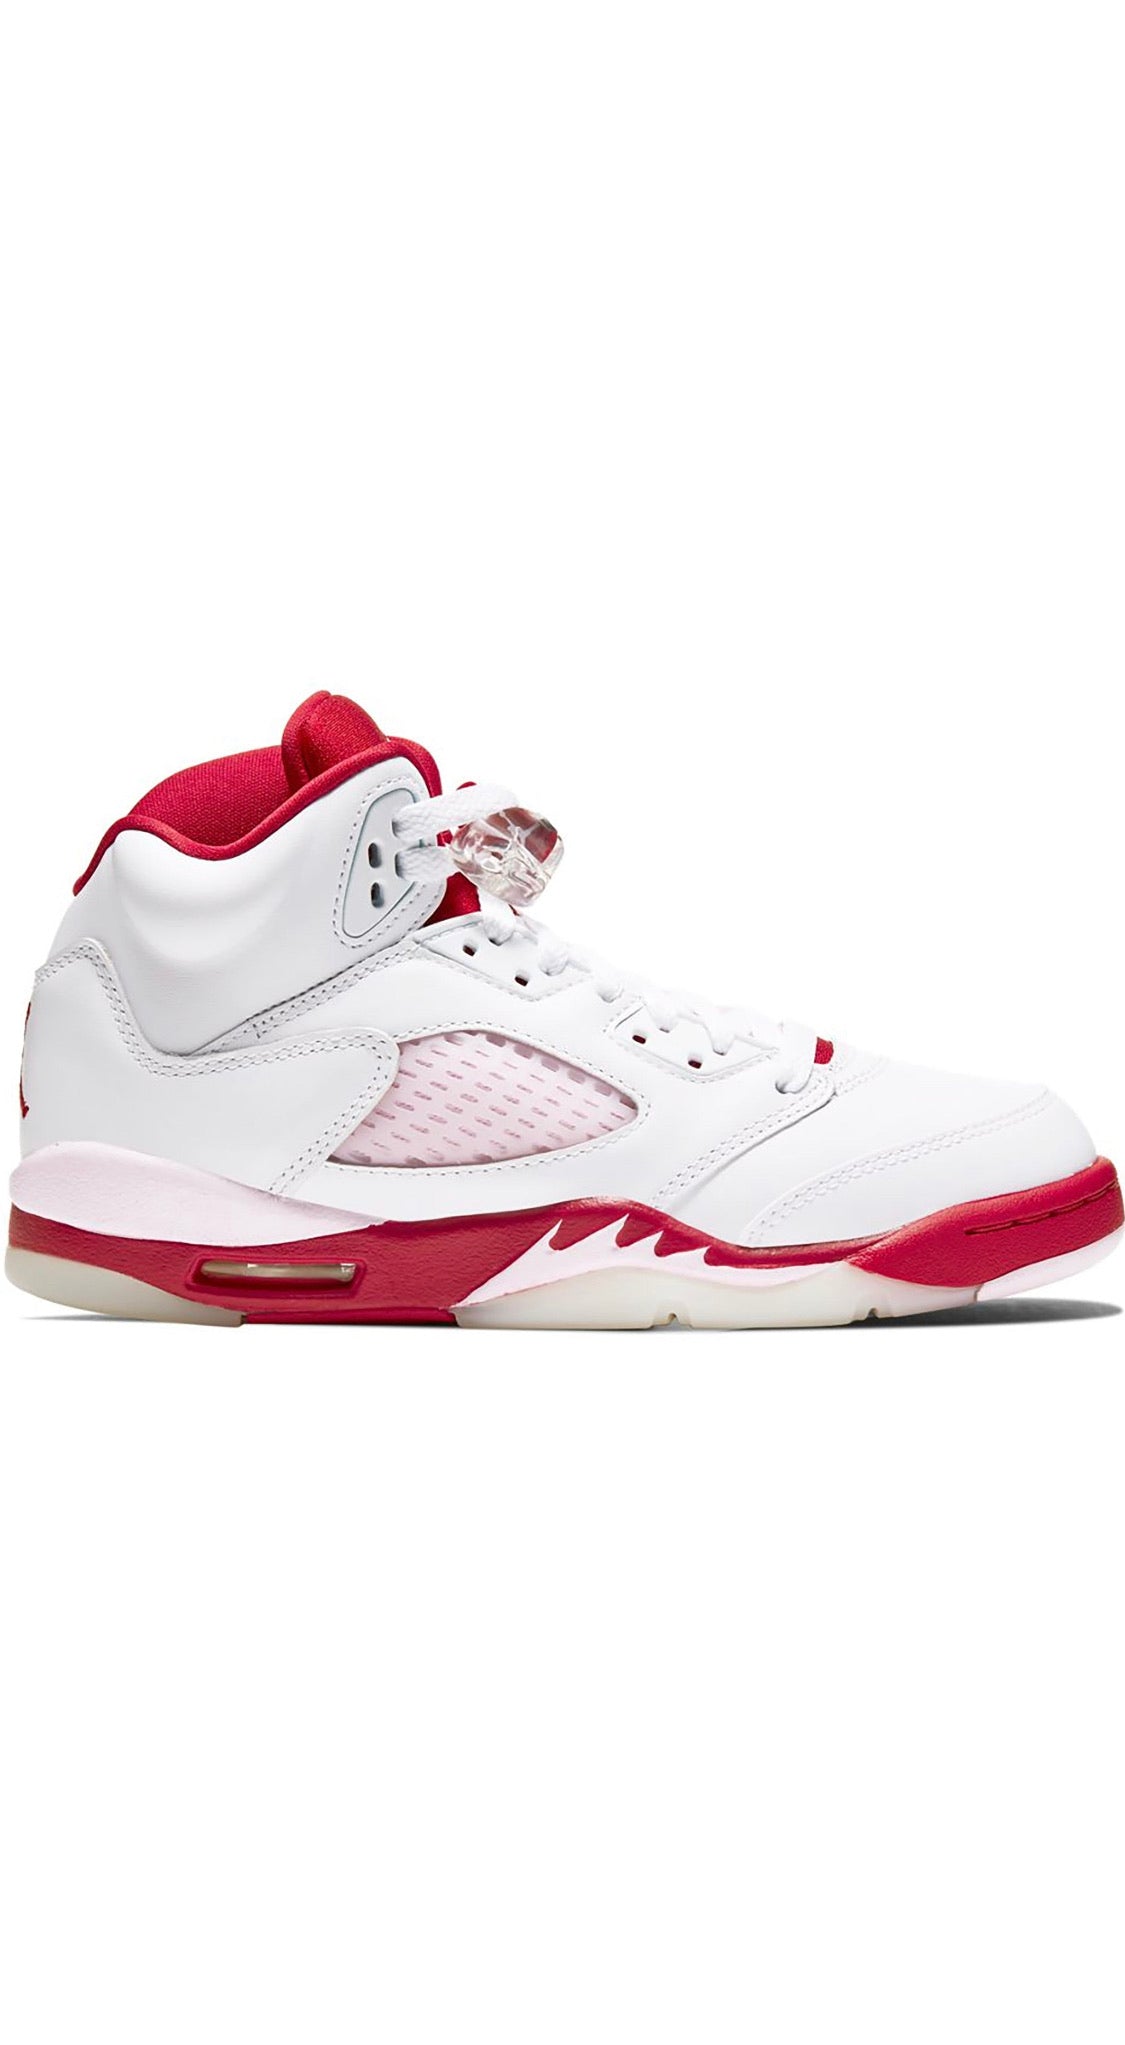 Jordan 5 Retro “White Pink Red”